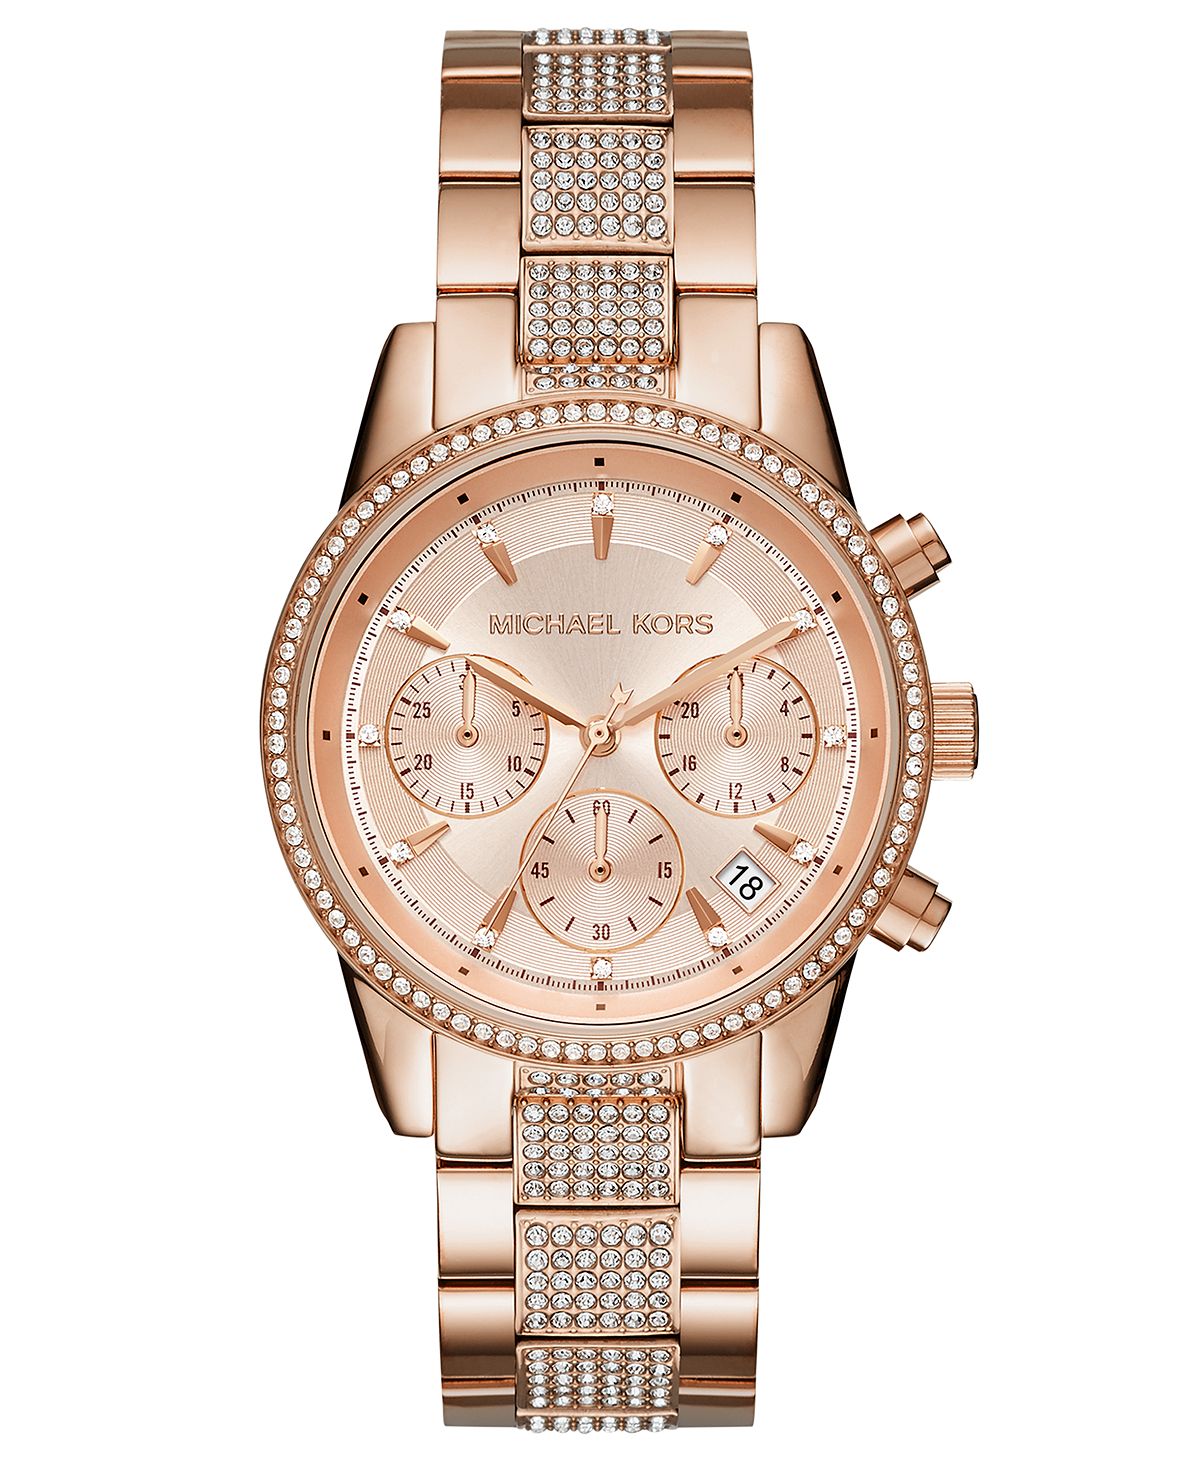 Женские часы Ritz с хронографом и браслетом из нержавеющей стали цвета розового золота, 37 мм Michael Kors фотографии